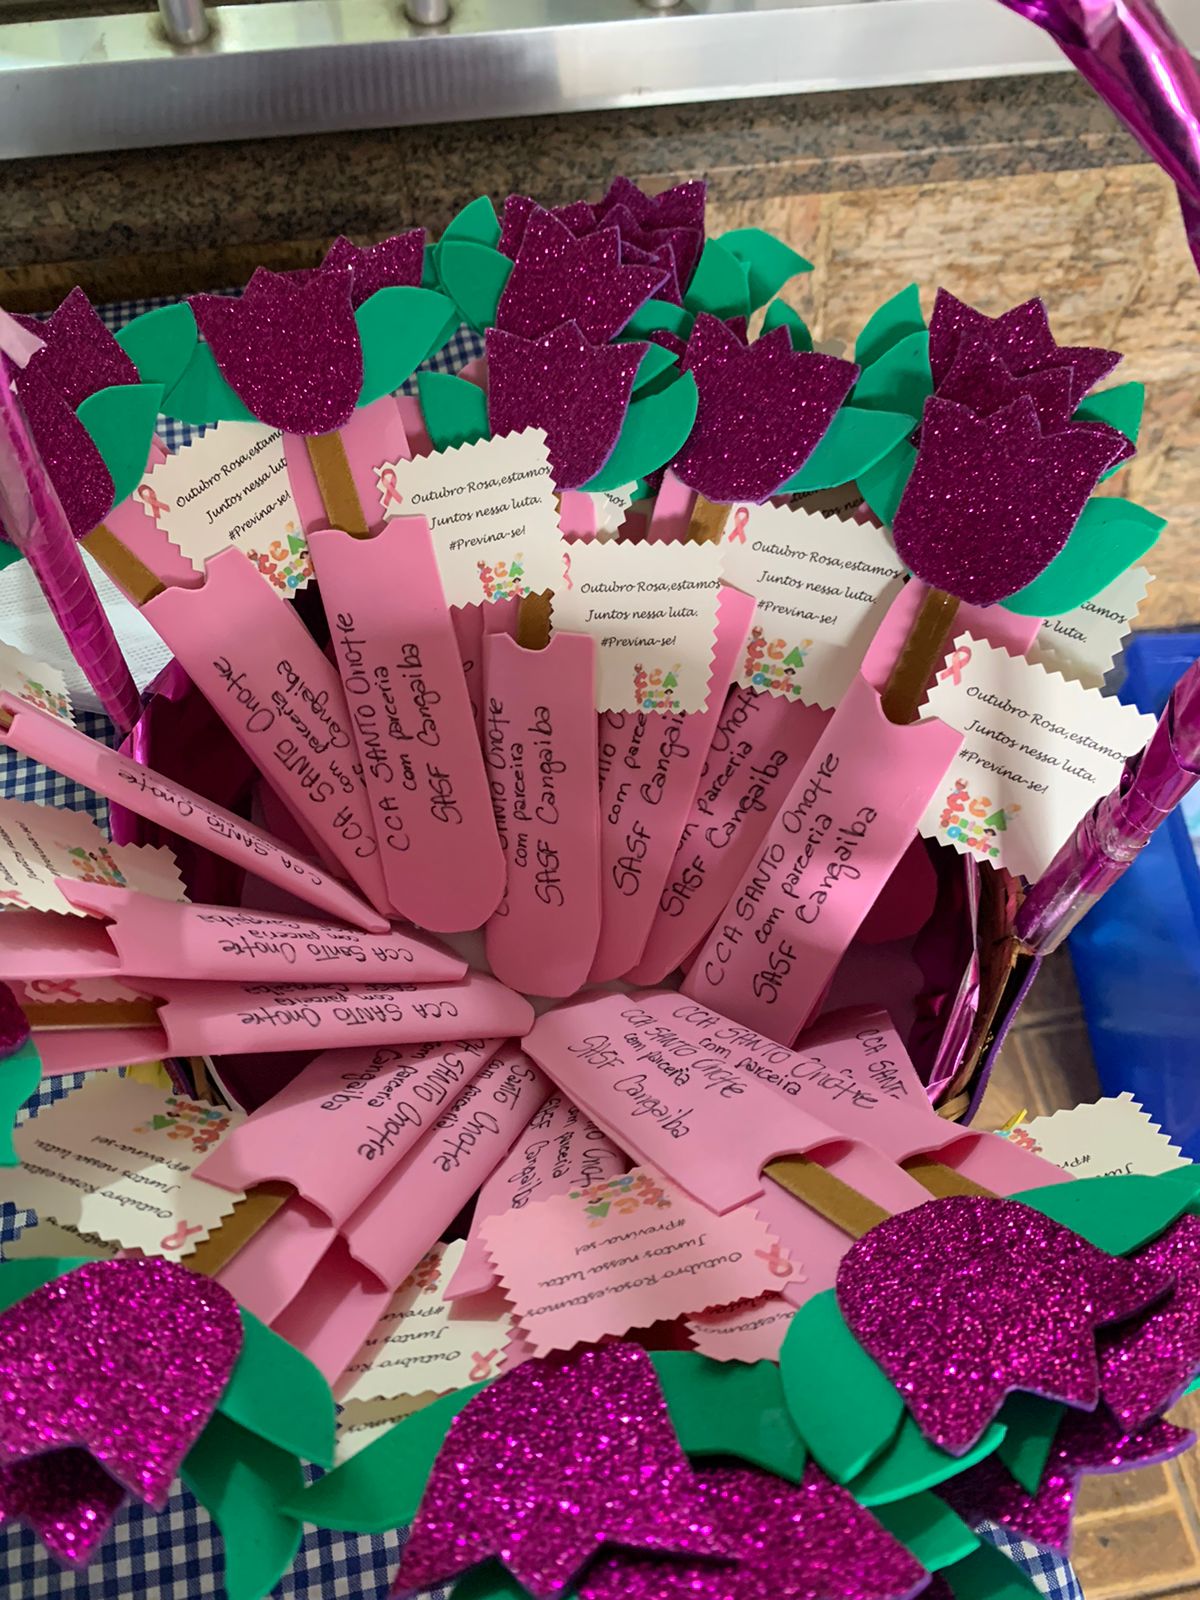 18 flores de pétalas E.V.A e cabo de palito de sorvete, com um bilhete colado em cada flor sobre a prevenção ao câncer de mama, tendo menção aos dois serviços organizadores do evento escrito em preto no cabo da flor. 